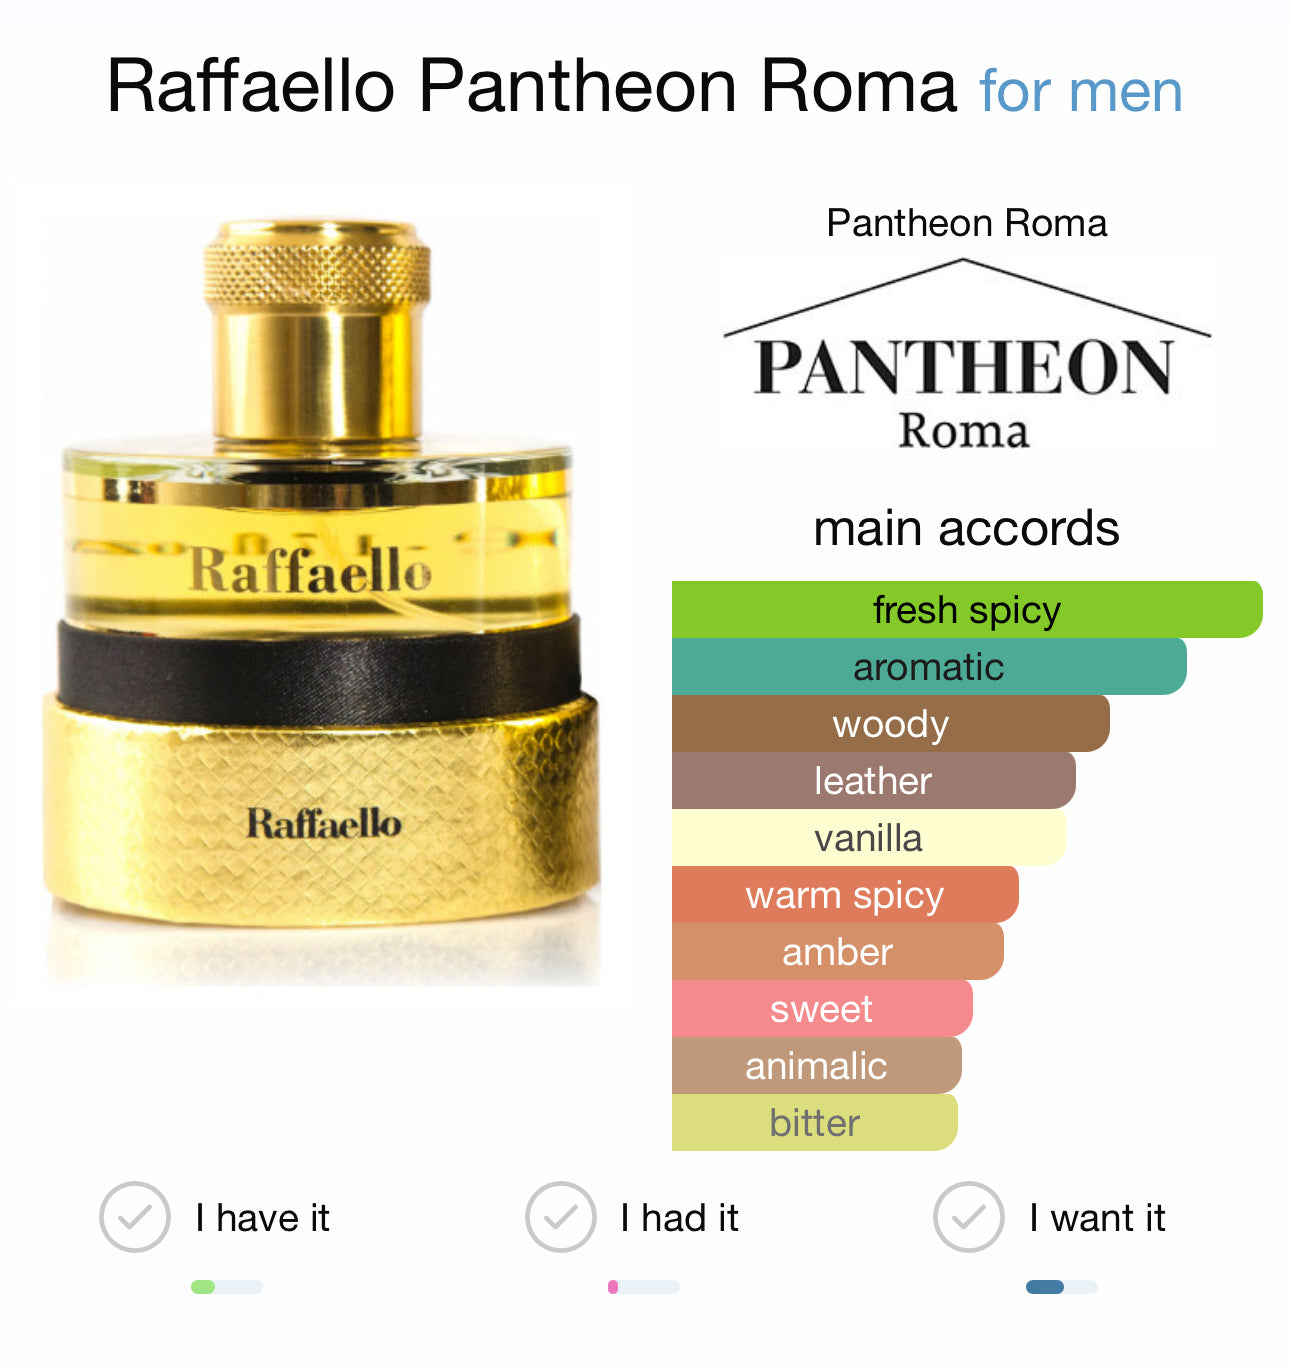 RAFFAELLO - PANTHEON ROMA